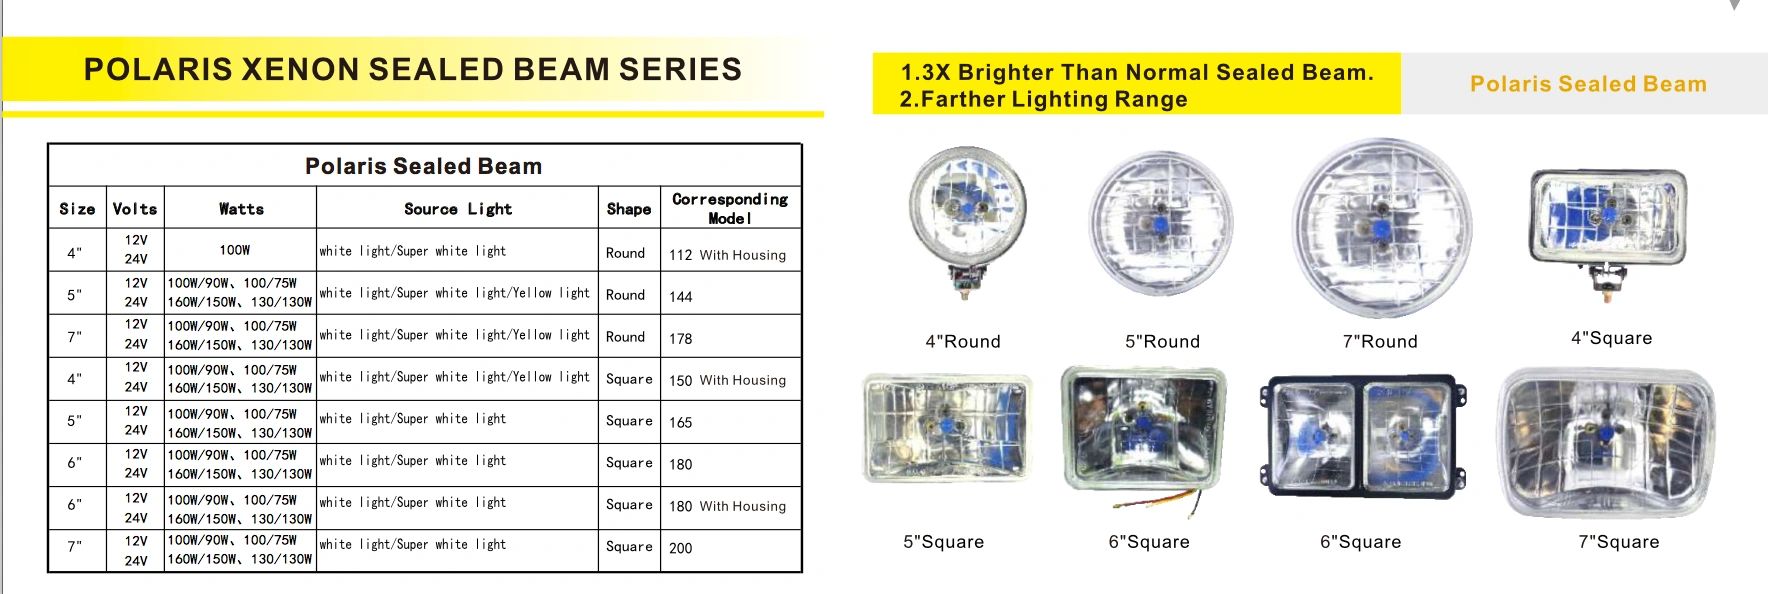 Polaris Xenon Sealed Beam Series
Round: 4"/5"/7"
Square: 4"/5"/6"/7"